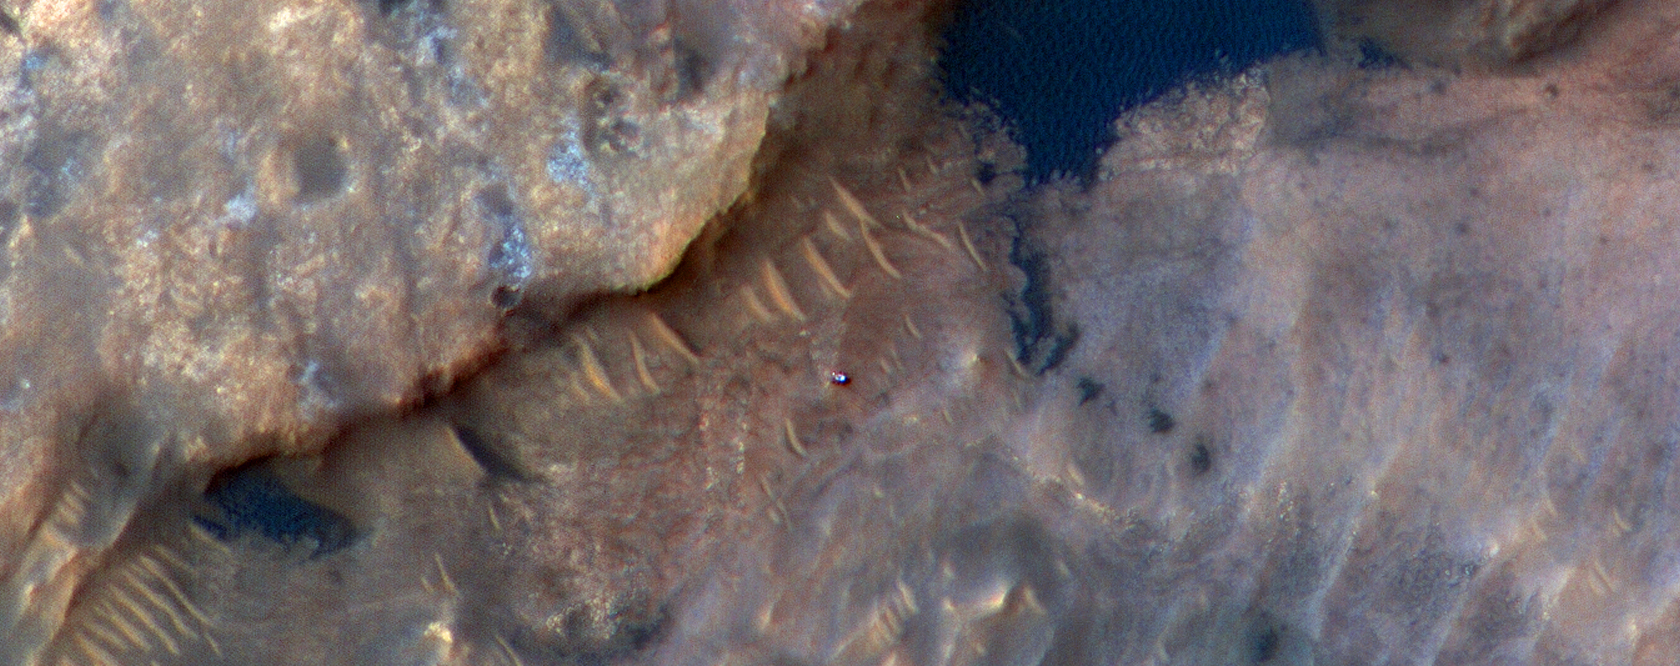 30 июня 2009. Марс Орбитер снимок Марса. Снимки с камеры HIRISE С орбиты Марса. NASA 31.10.2005. Марс снимки НАСА реальные.